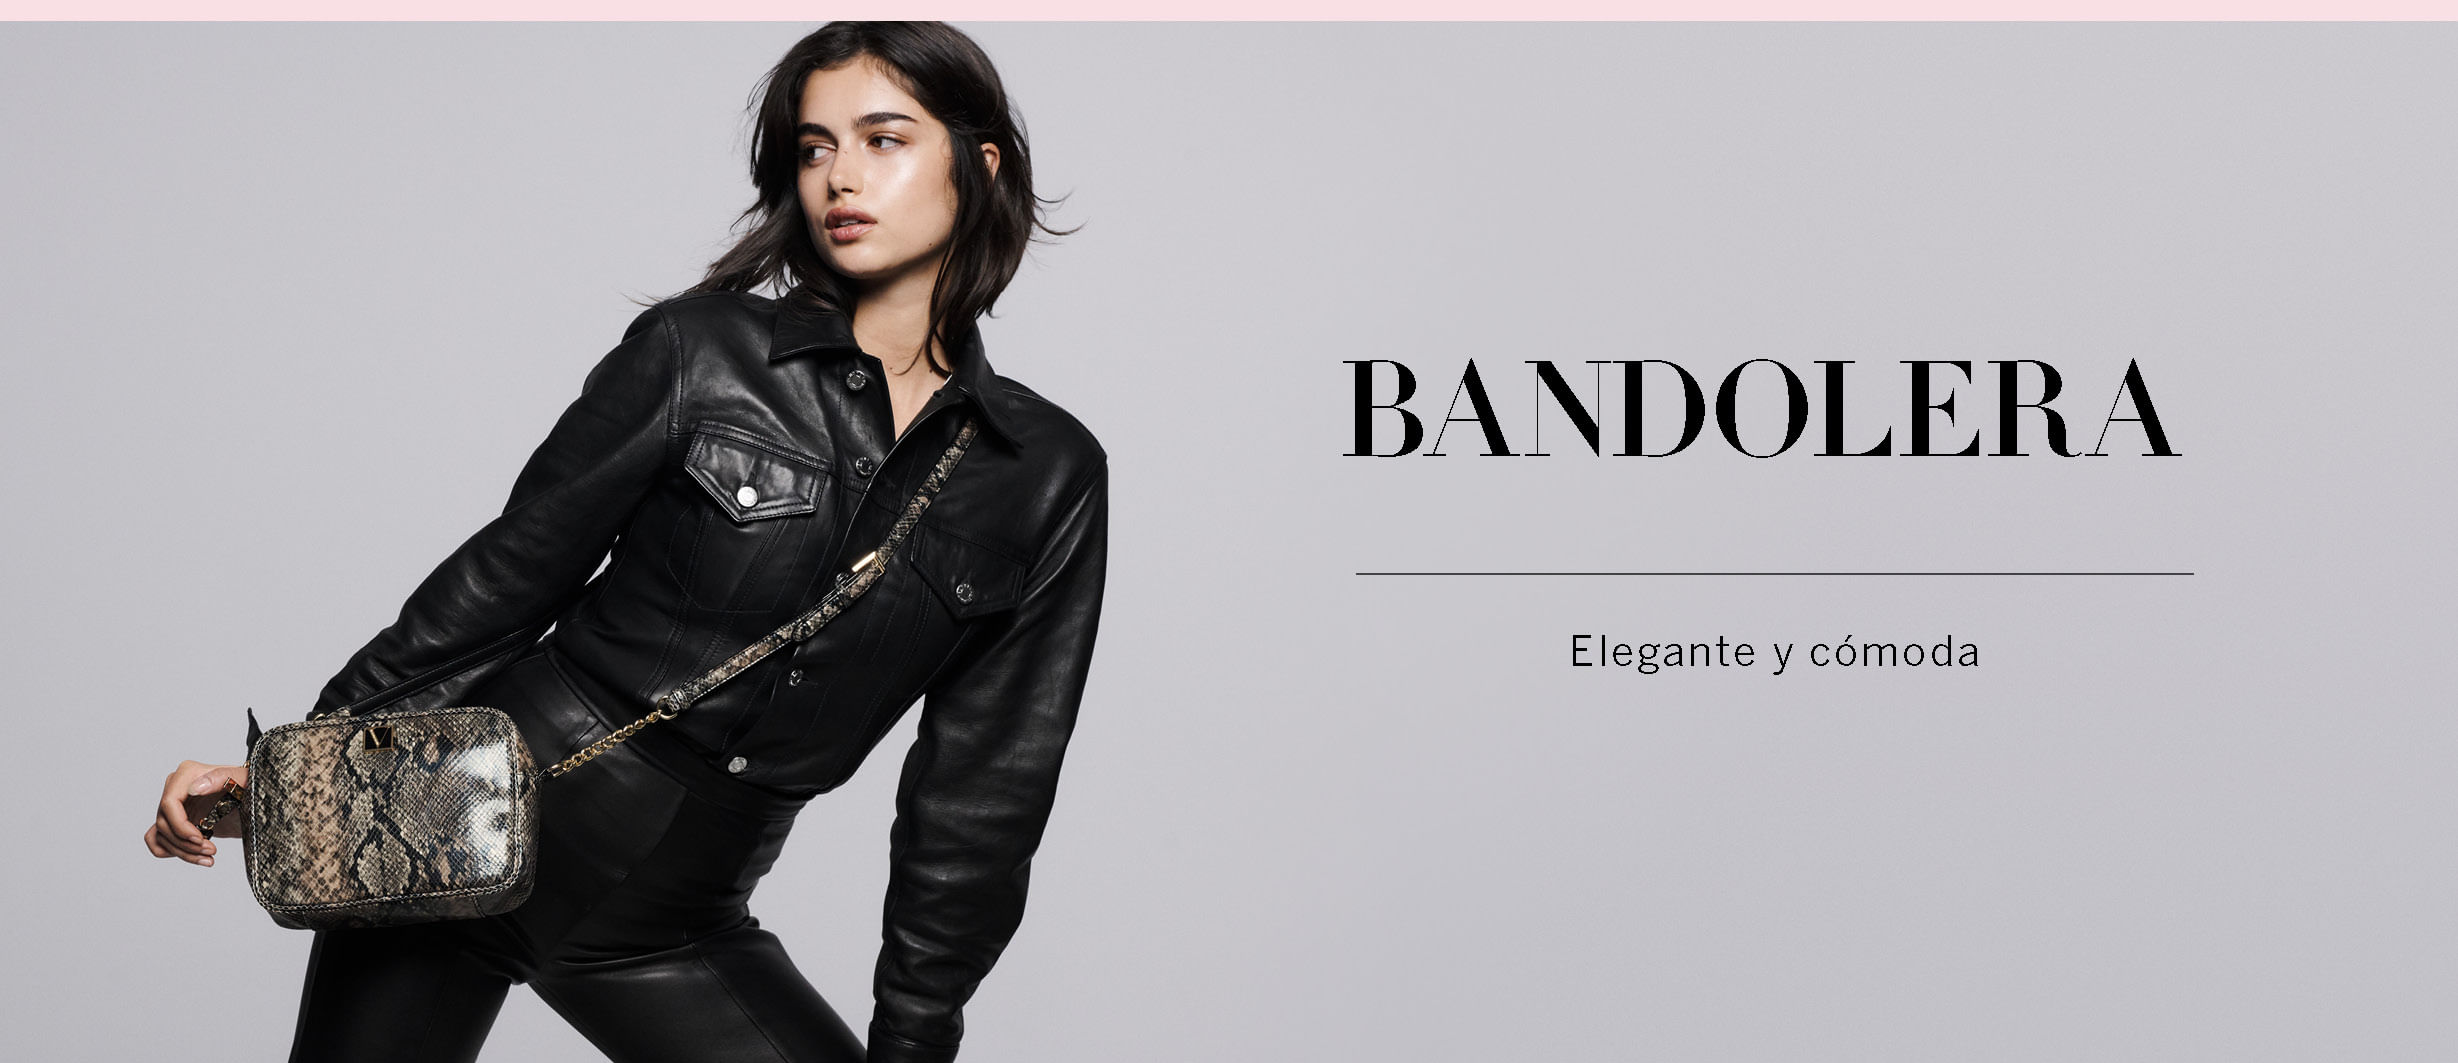 Elegante y cómoda | Bandolera | Victoria's Secret Beauty Chile